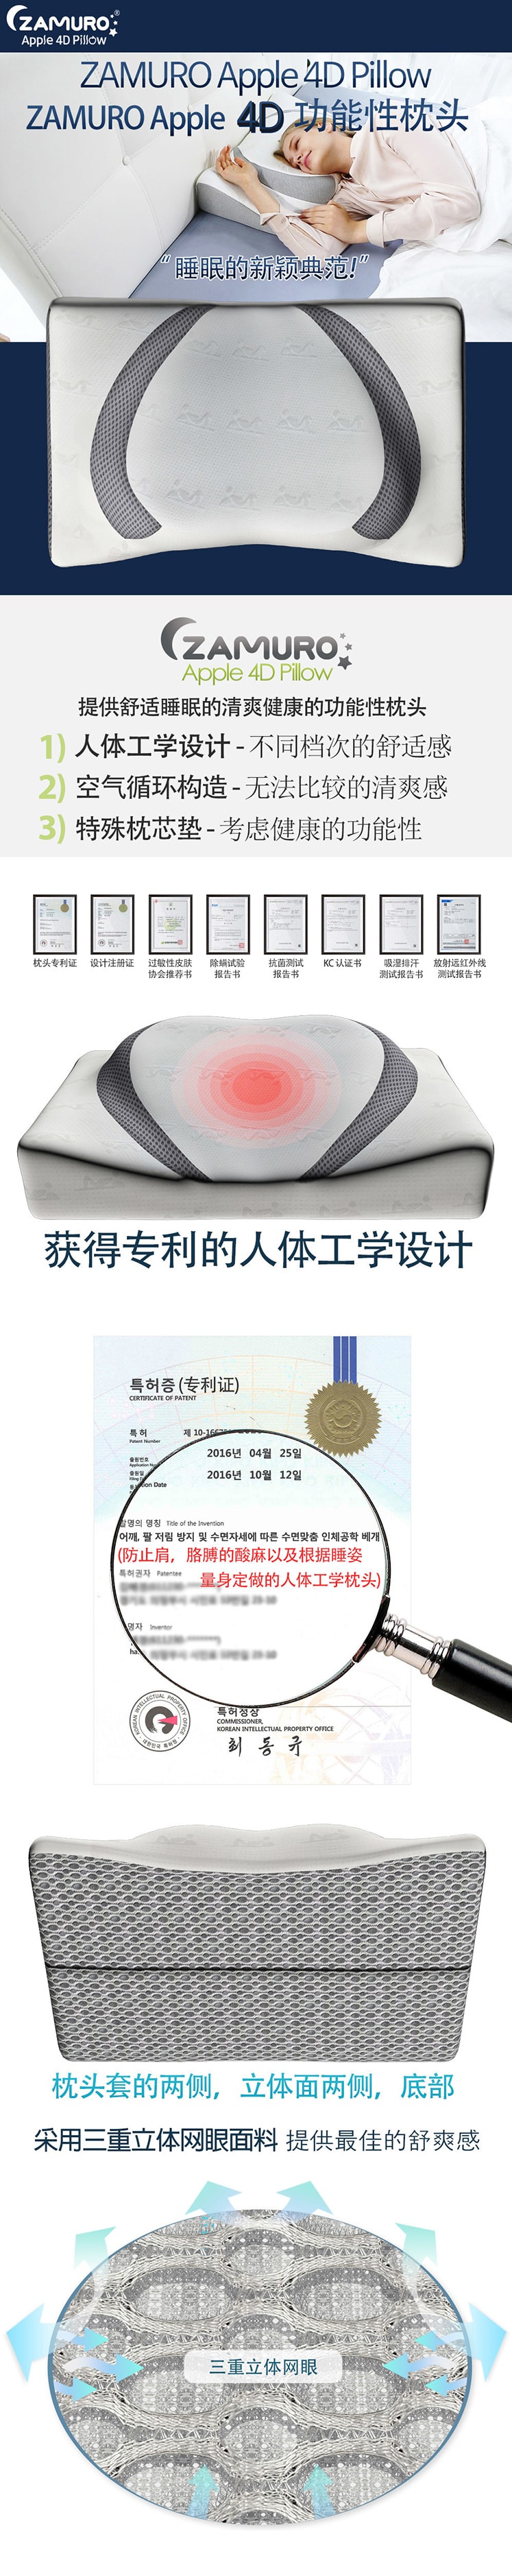 韩国 ZAMURO苹果4D人体工学颈椎功能记忆泡沫枕头 1 件